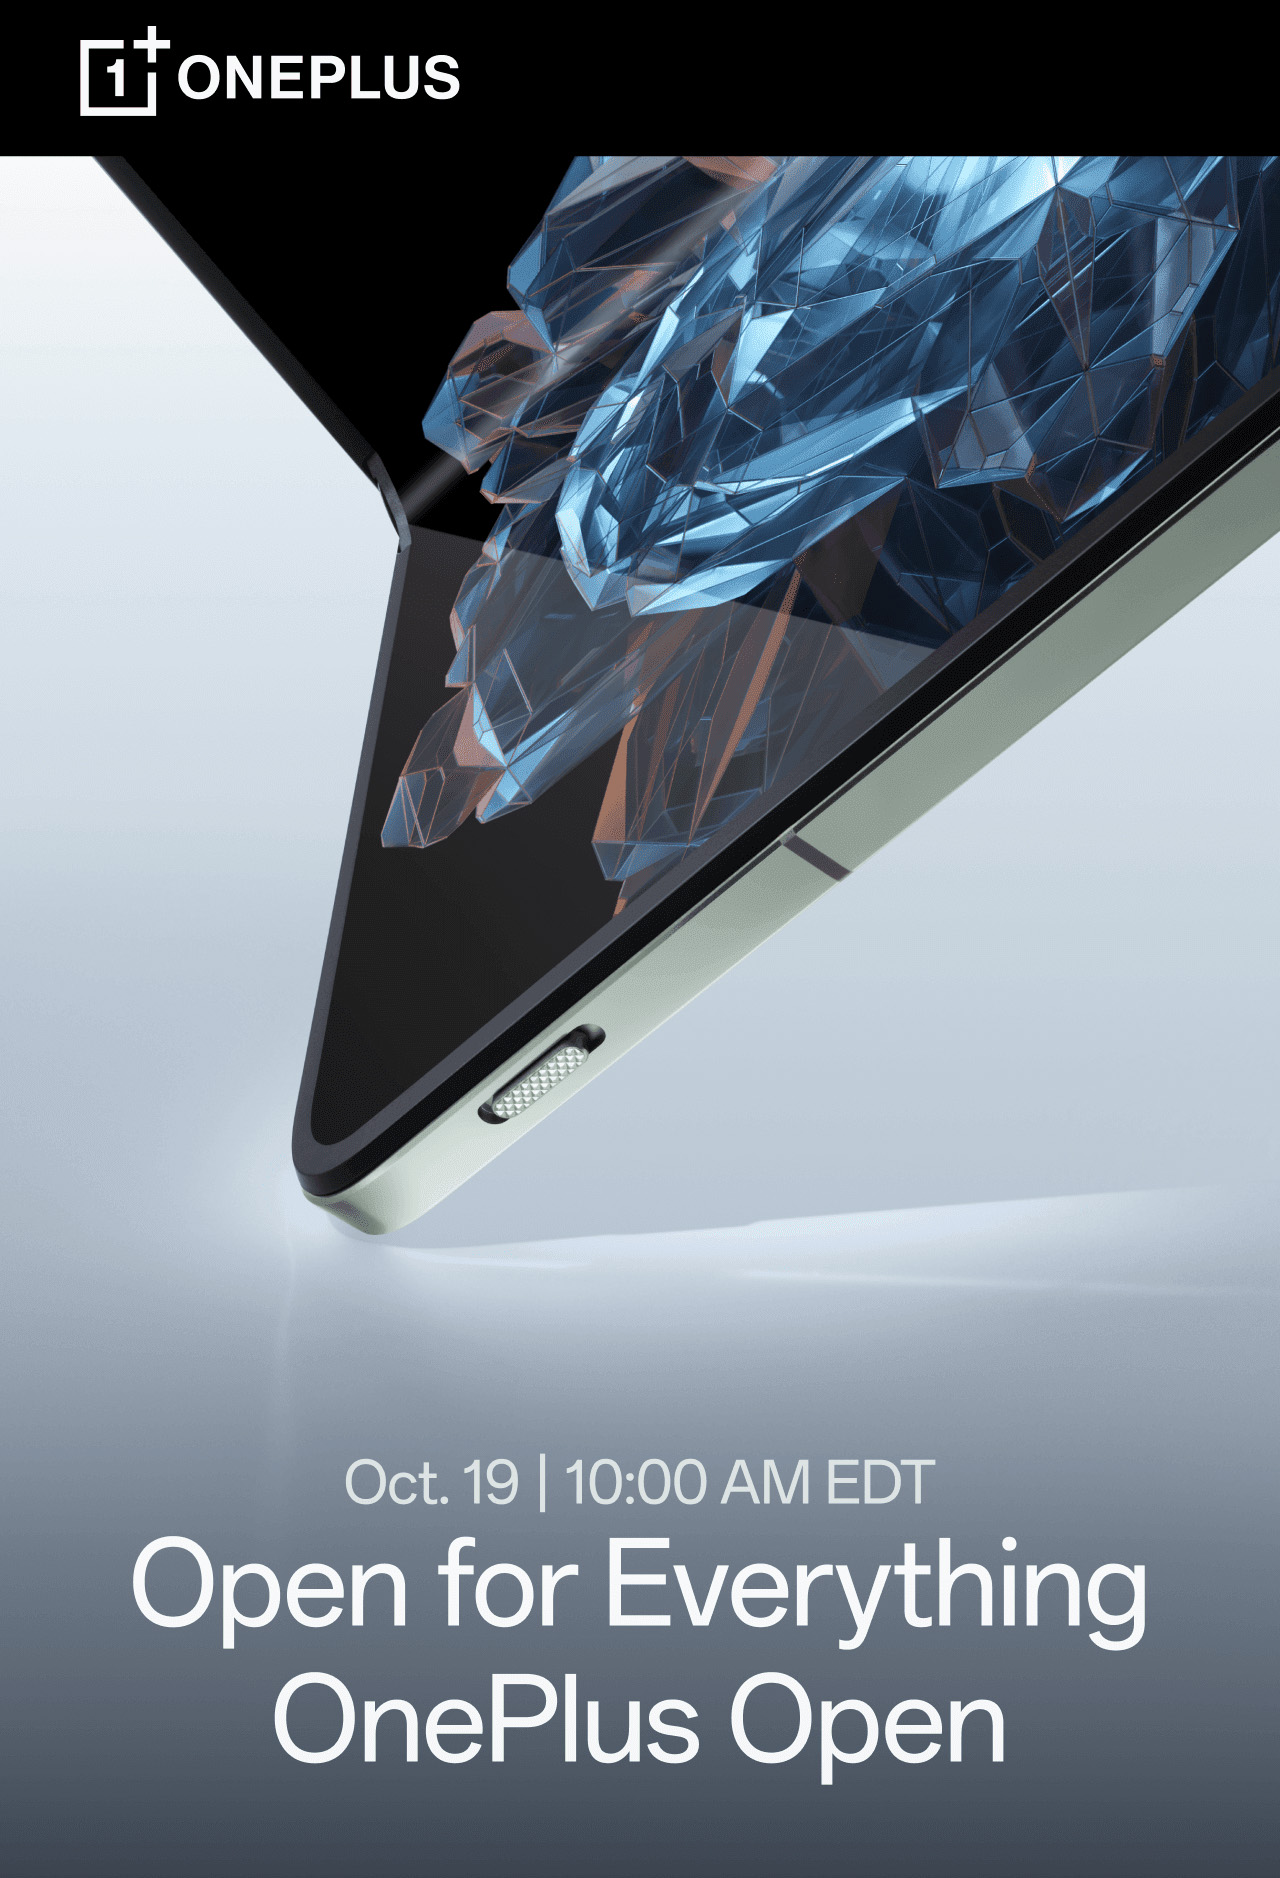 OnePlus Open - October 19